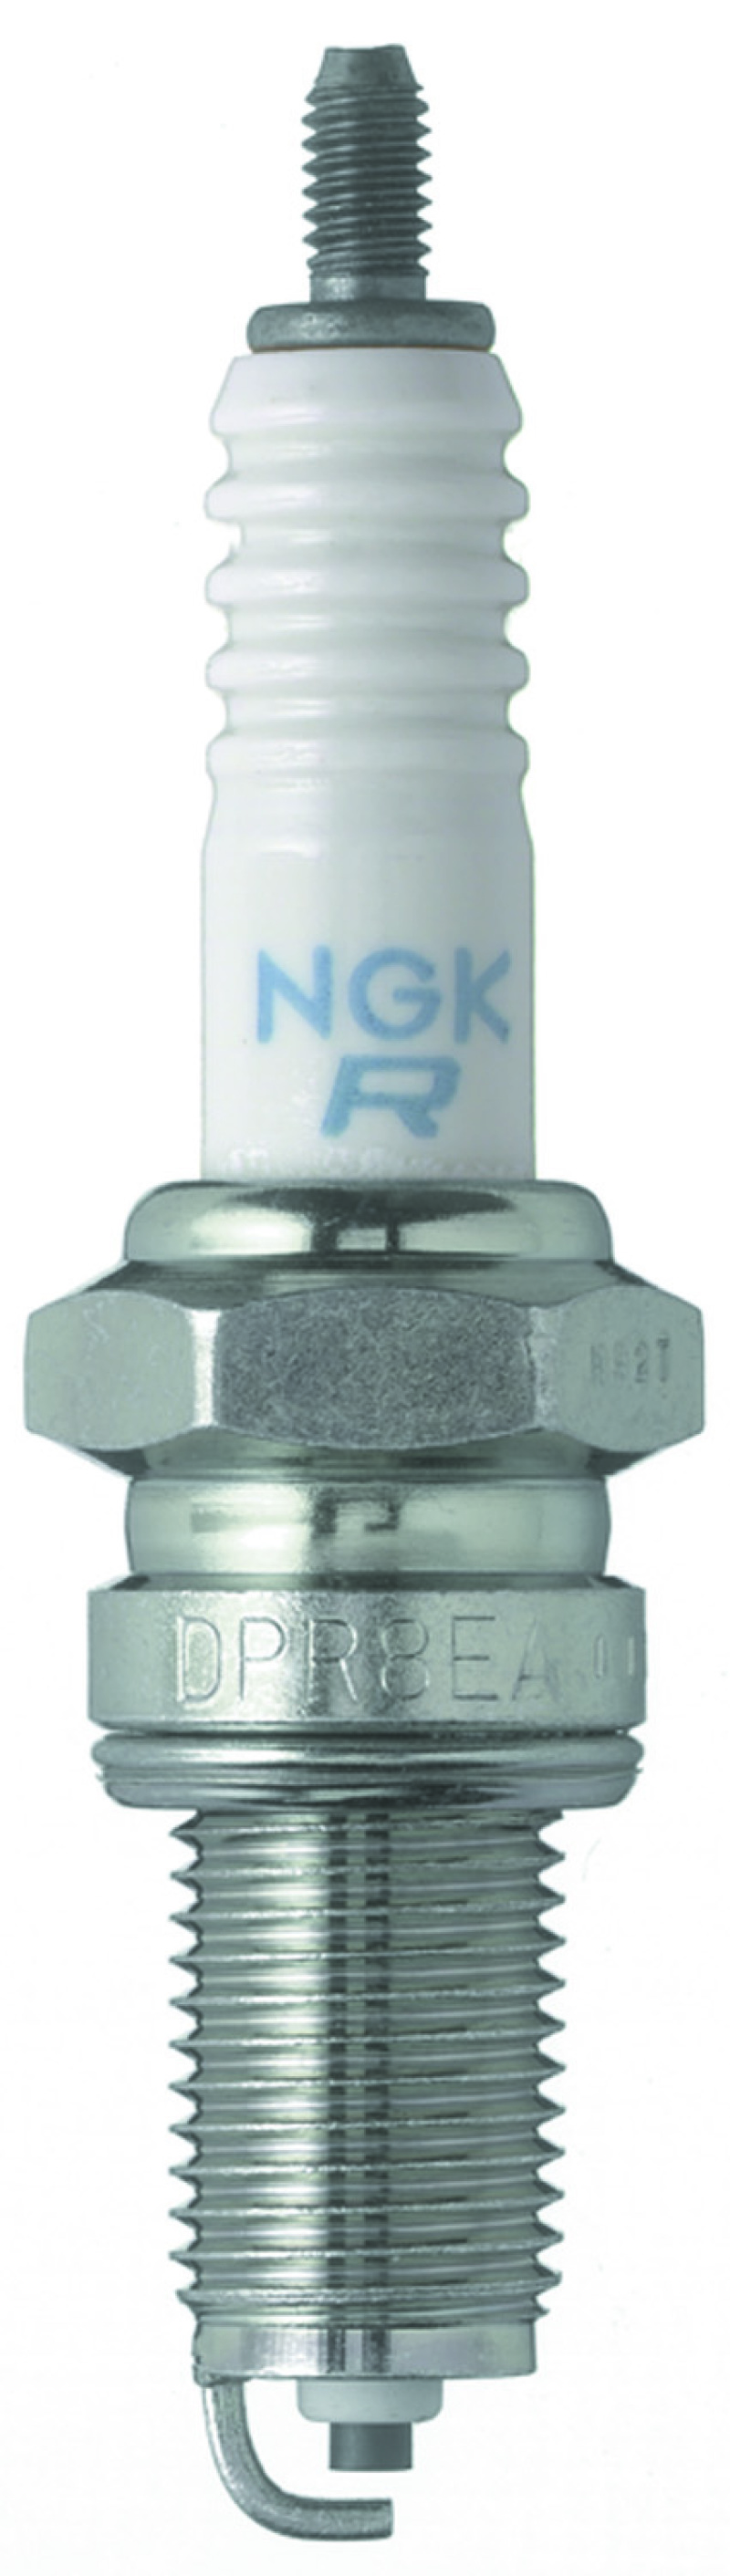 NGK Standard Spark Plug Box of 10 (DPR8EA-9) - 4929